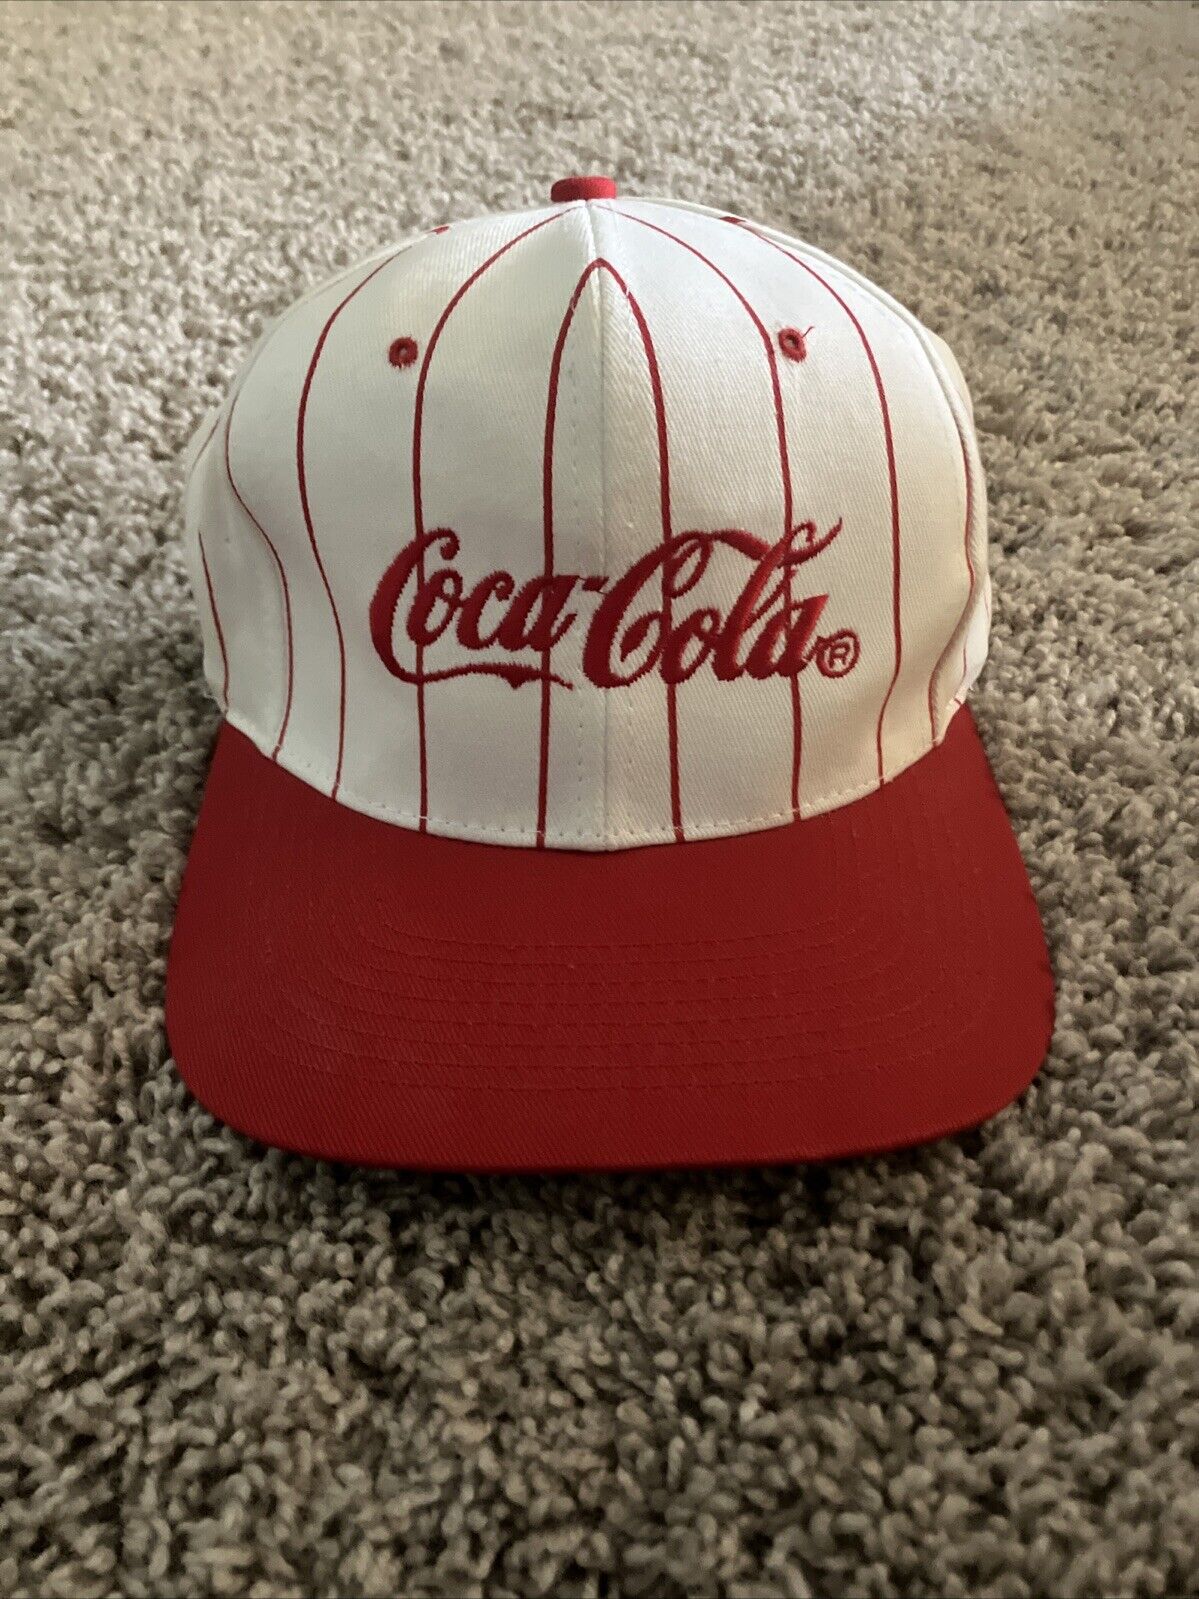 vintage coca cola hat